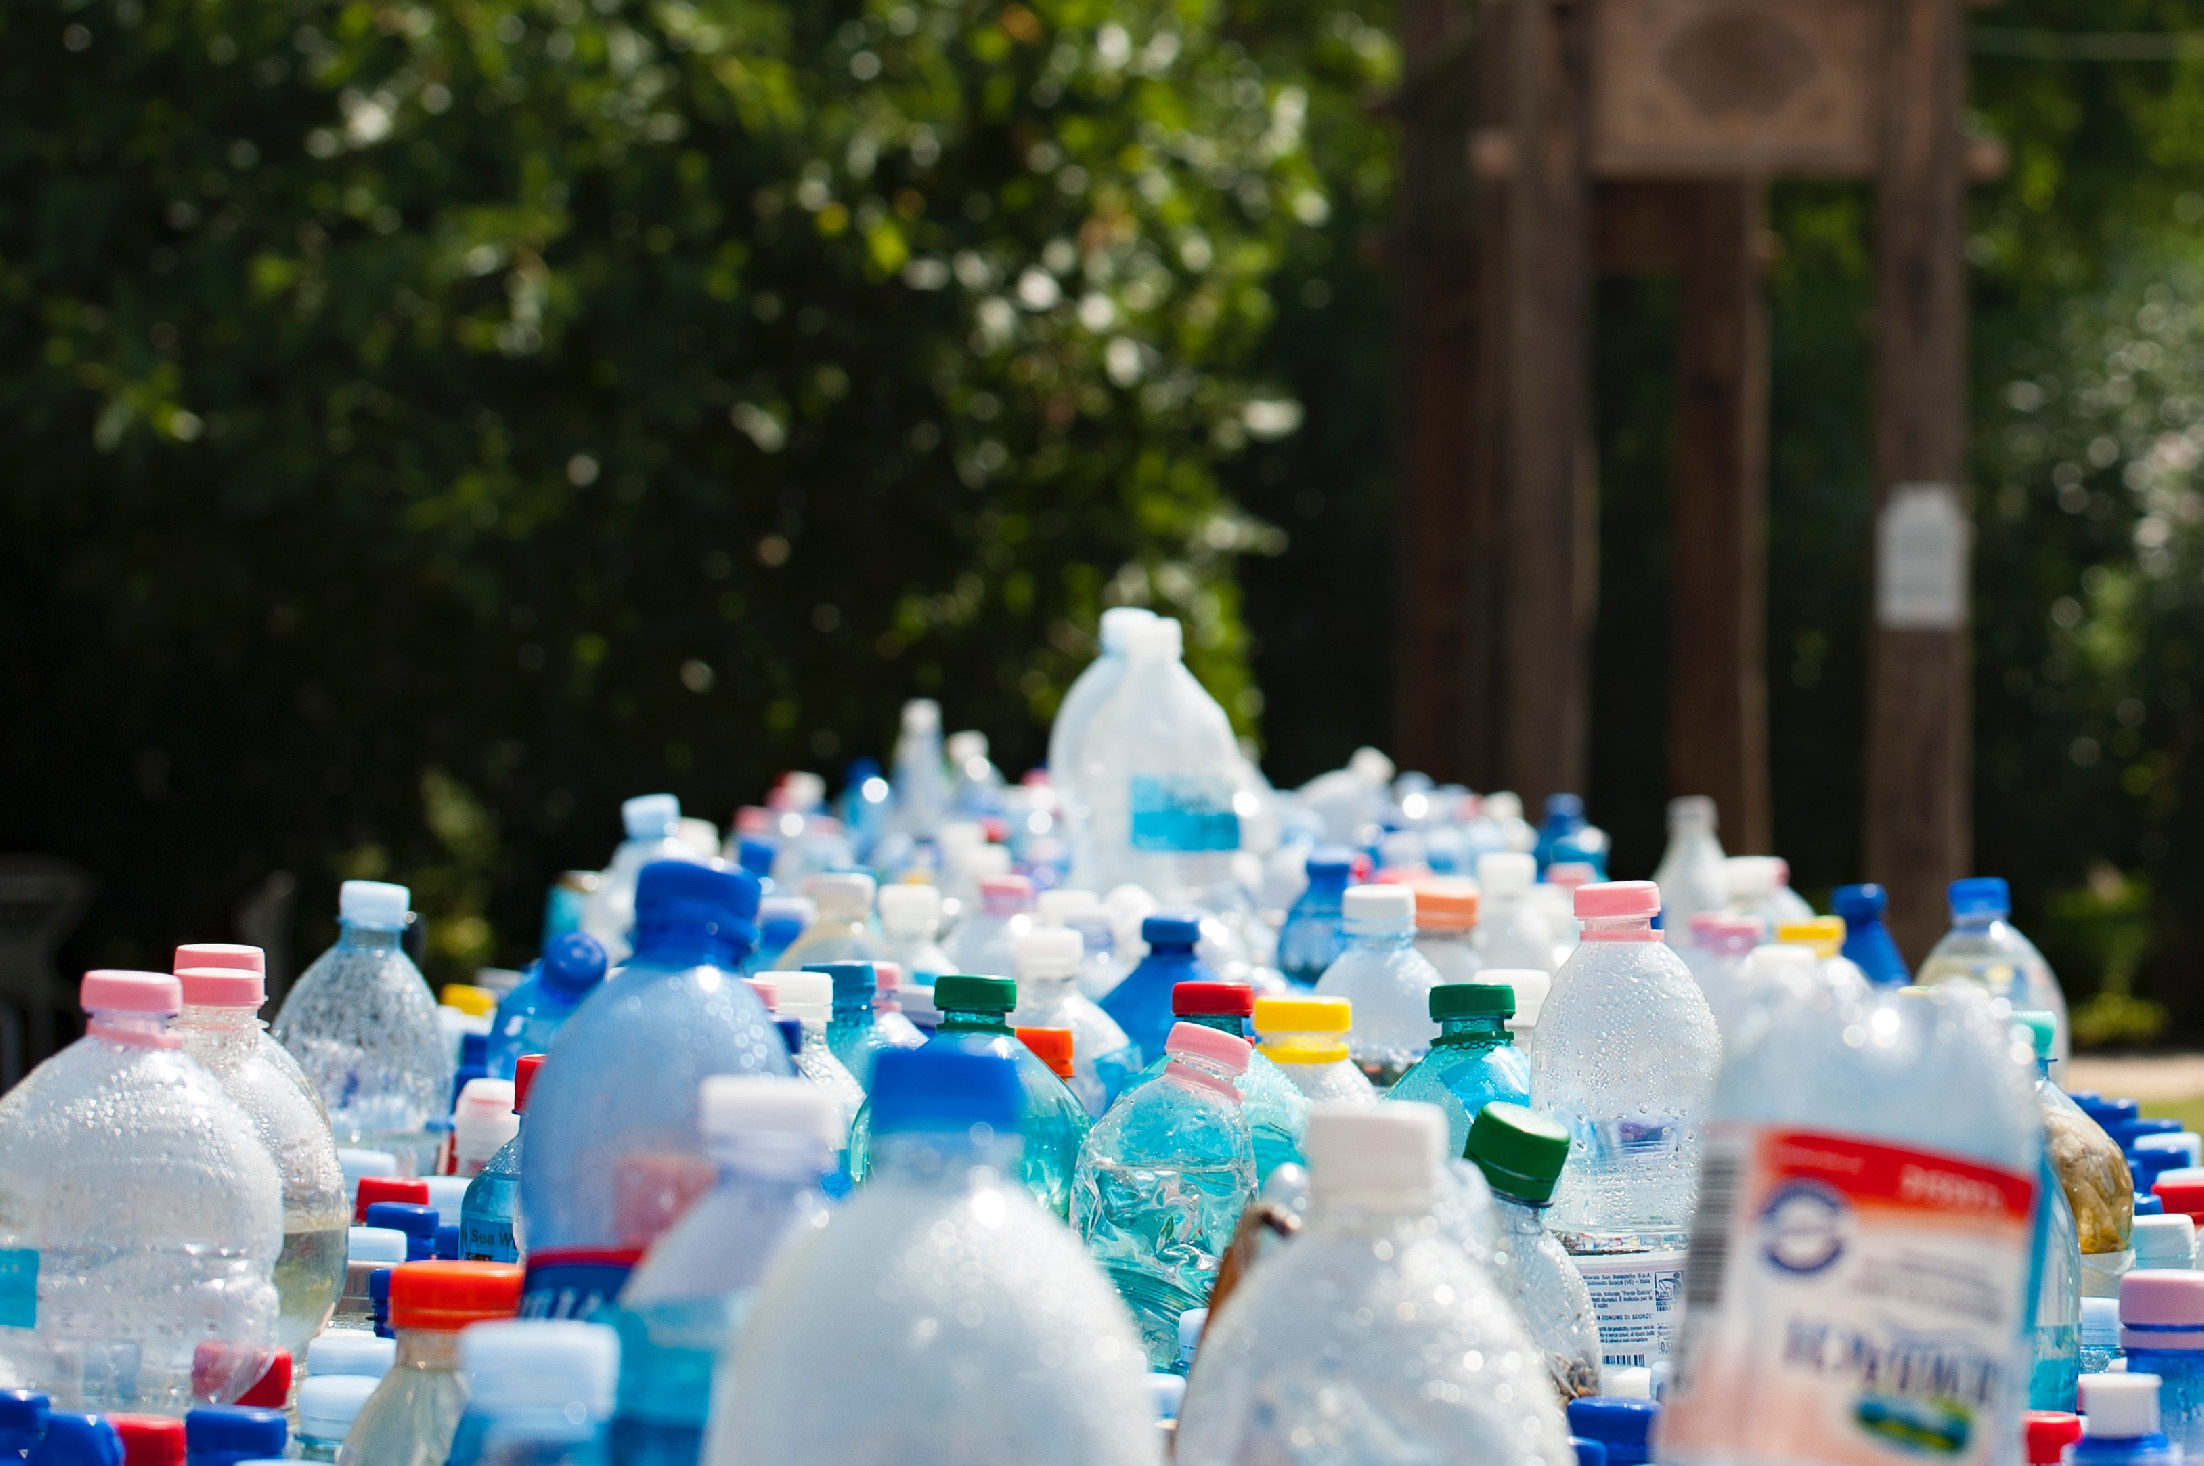 Januártól ismét lesz visszaváltási díj a fém, üveg és műanyag palackokra